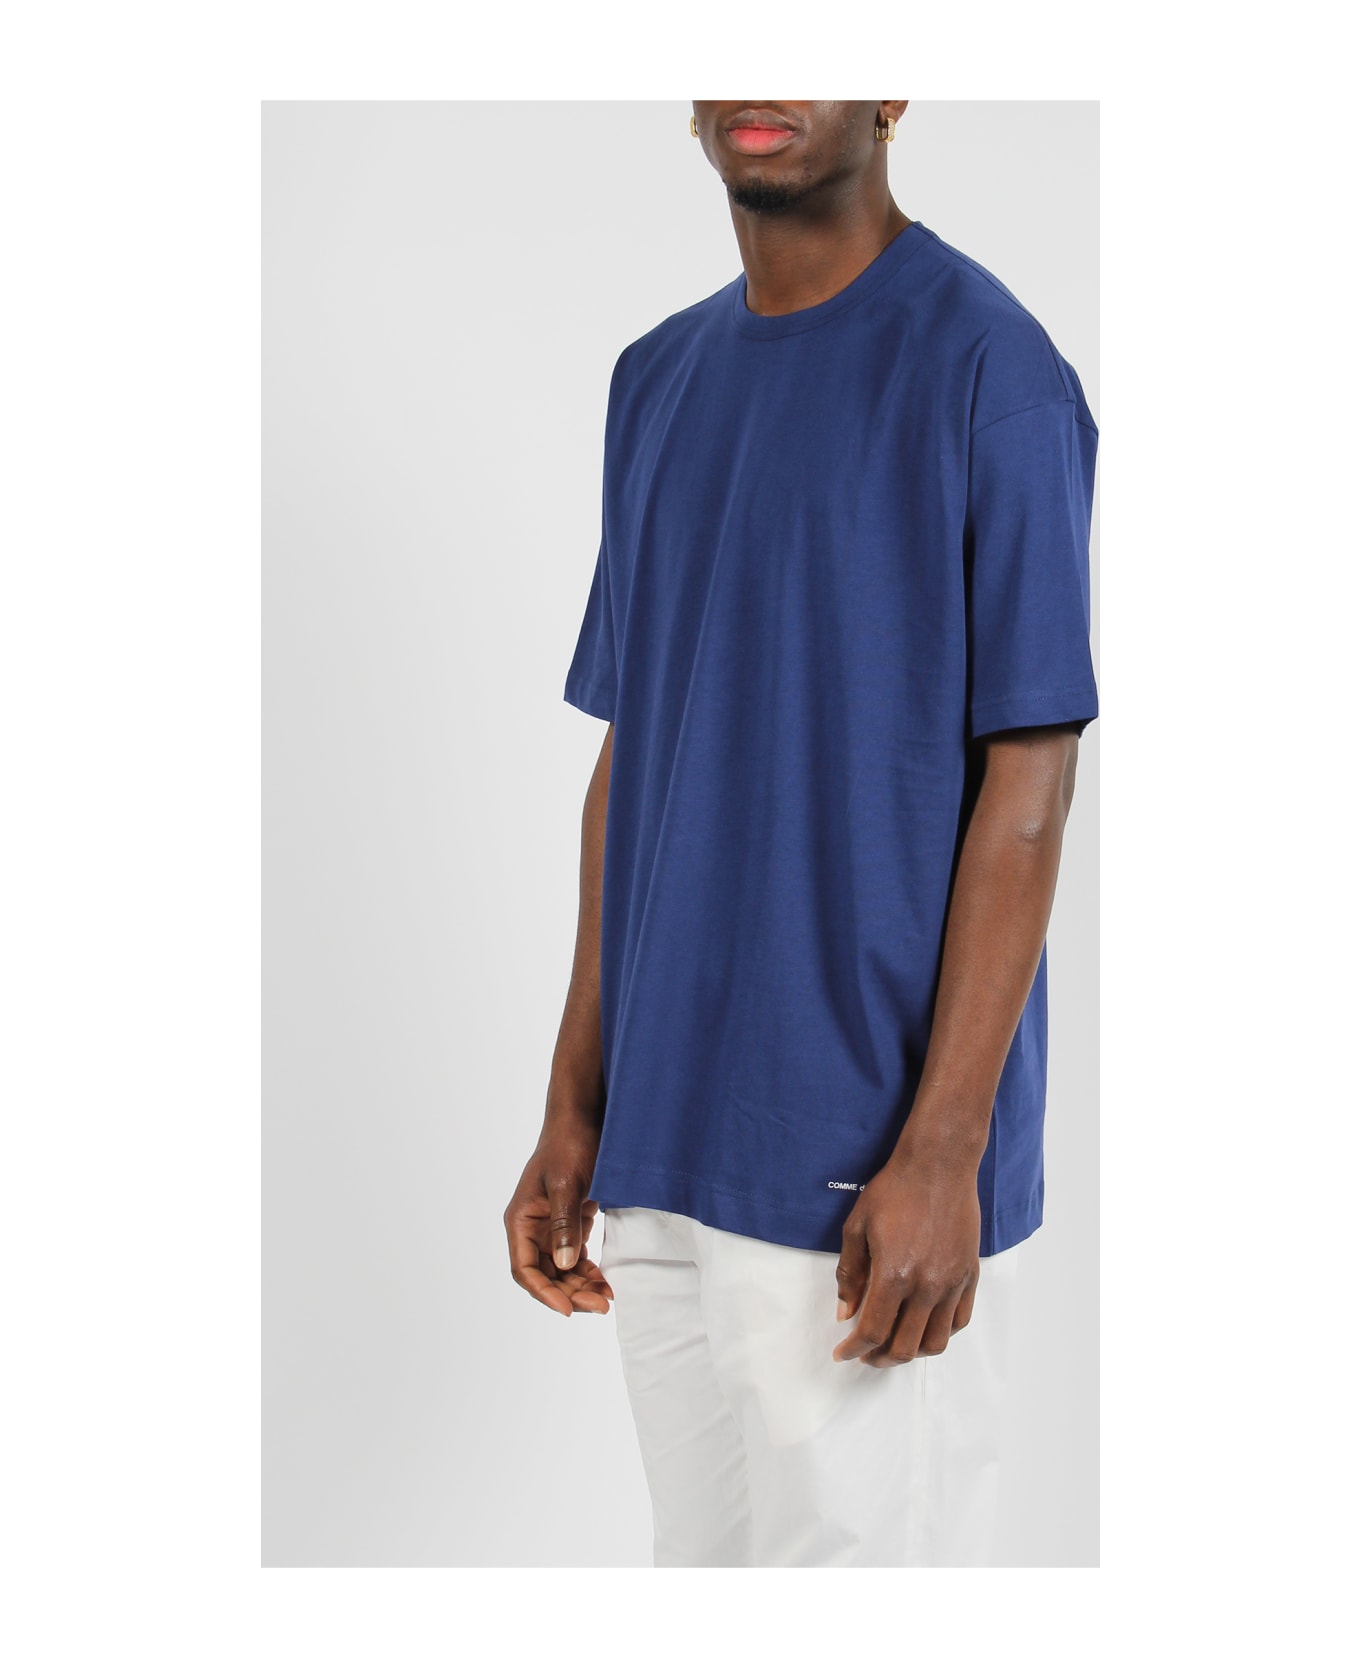 Comme des Garçons Shirt Jersey Cotton Basic T-shirt - Blue シャツ